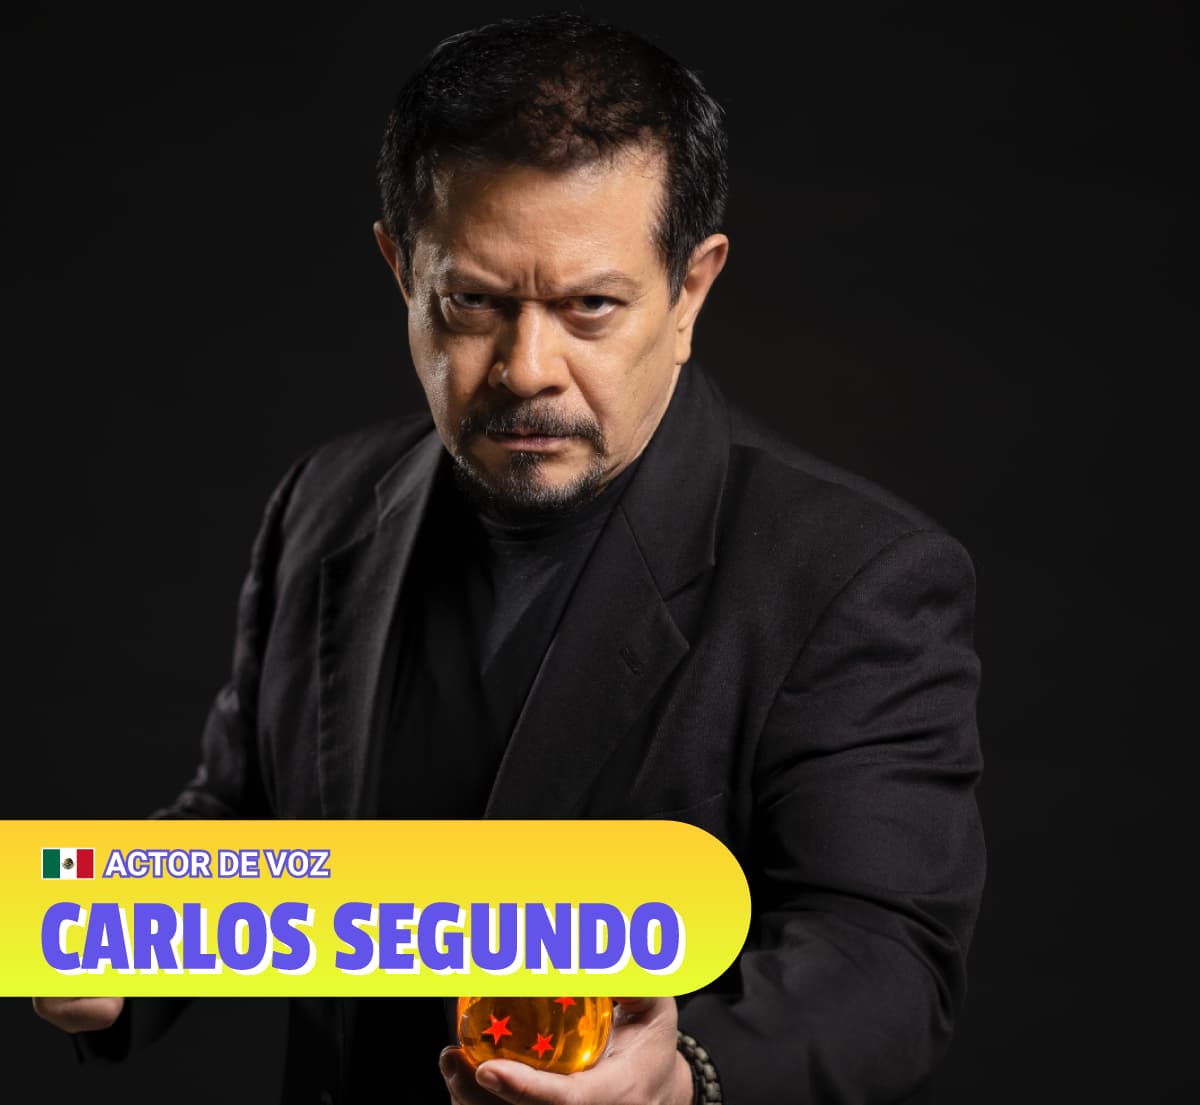 Carlos Segundo - Actor de Voz